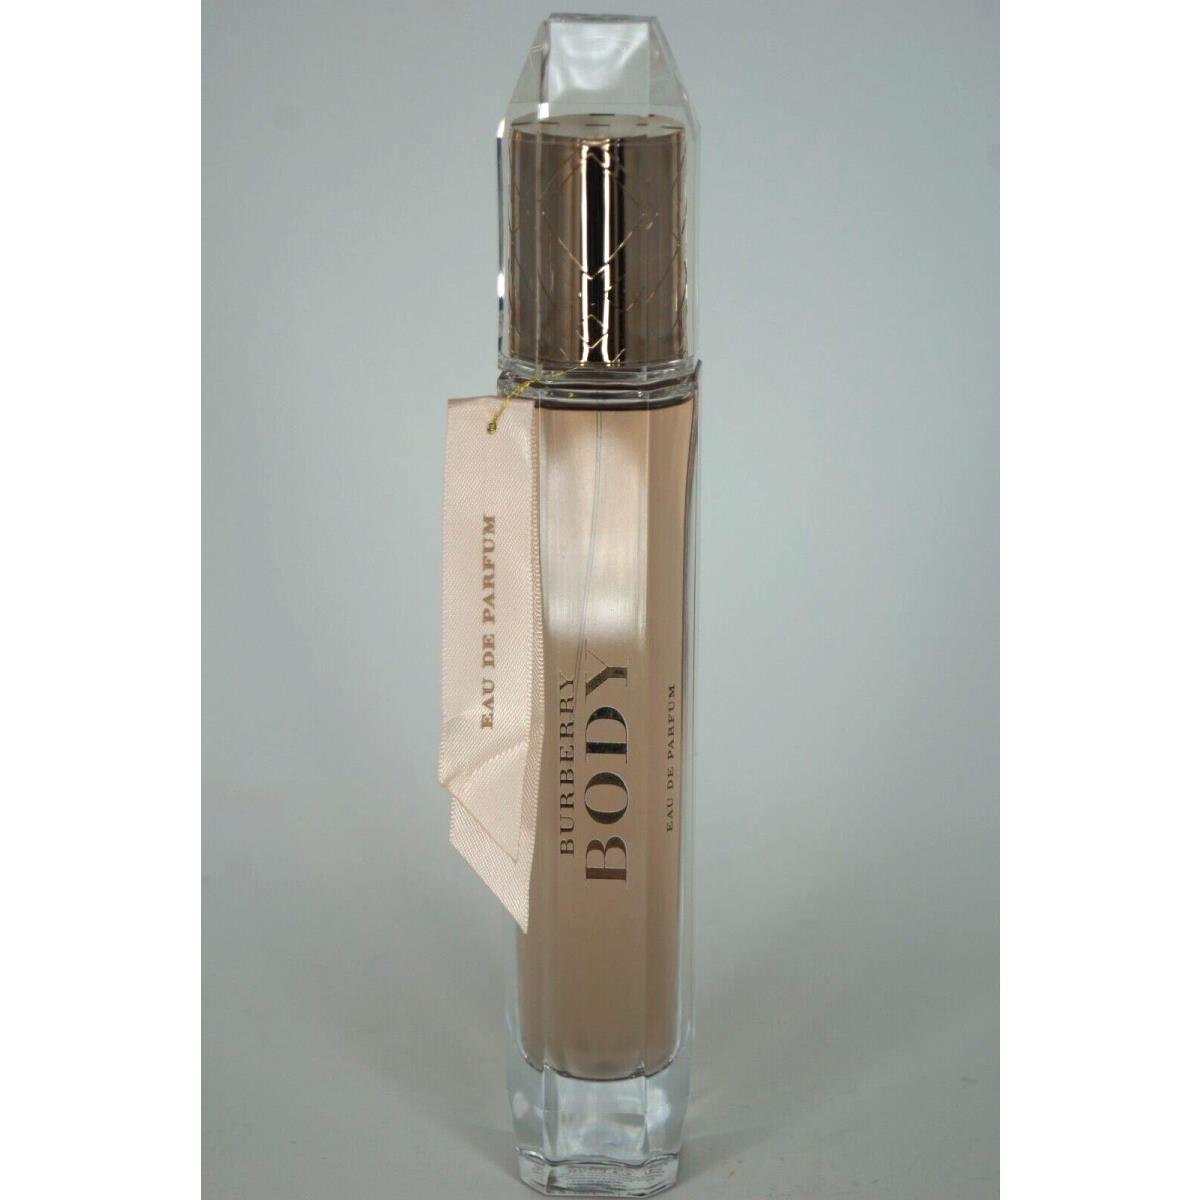 Tester - Burberry Limited Perfume Body Eau De Parfum Spray 2.8 oz